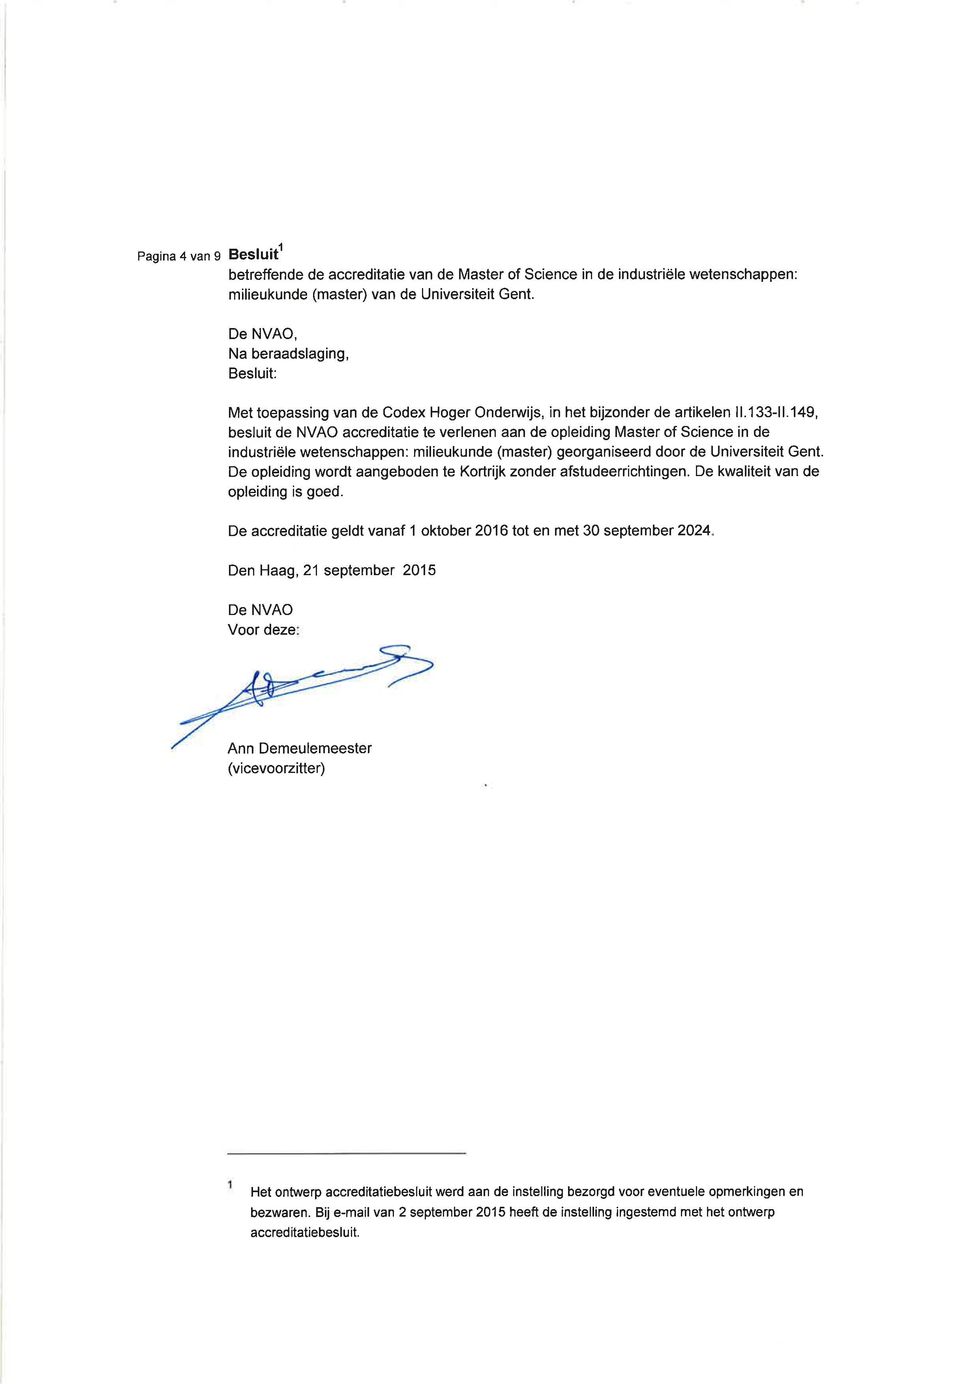 149, besluit de NVAO accreditatie te verlenen aan de opleiding Master of Science in de industriële wetenschappen: milieukunde (master) georganiseerd door de Universiteit Gent.